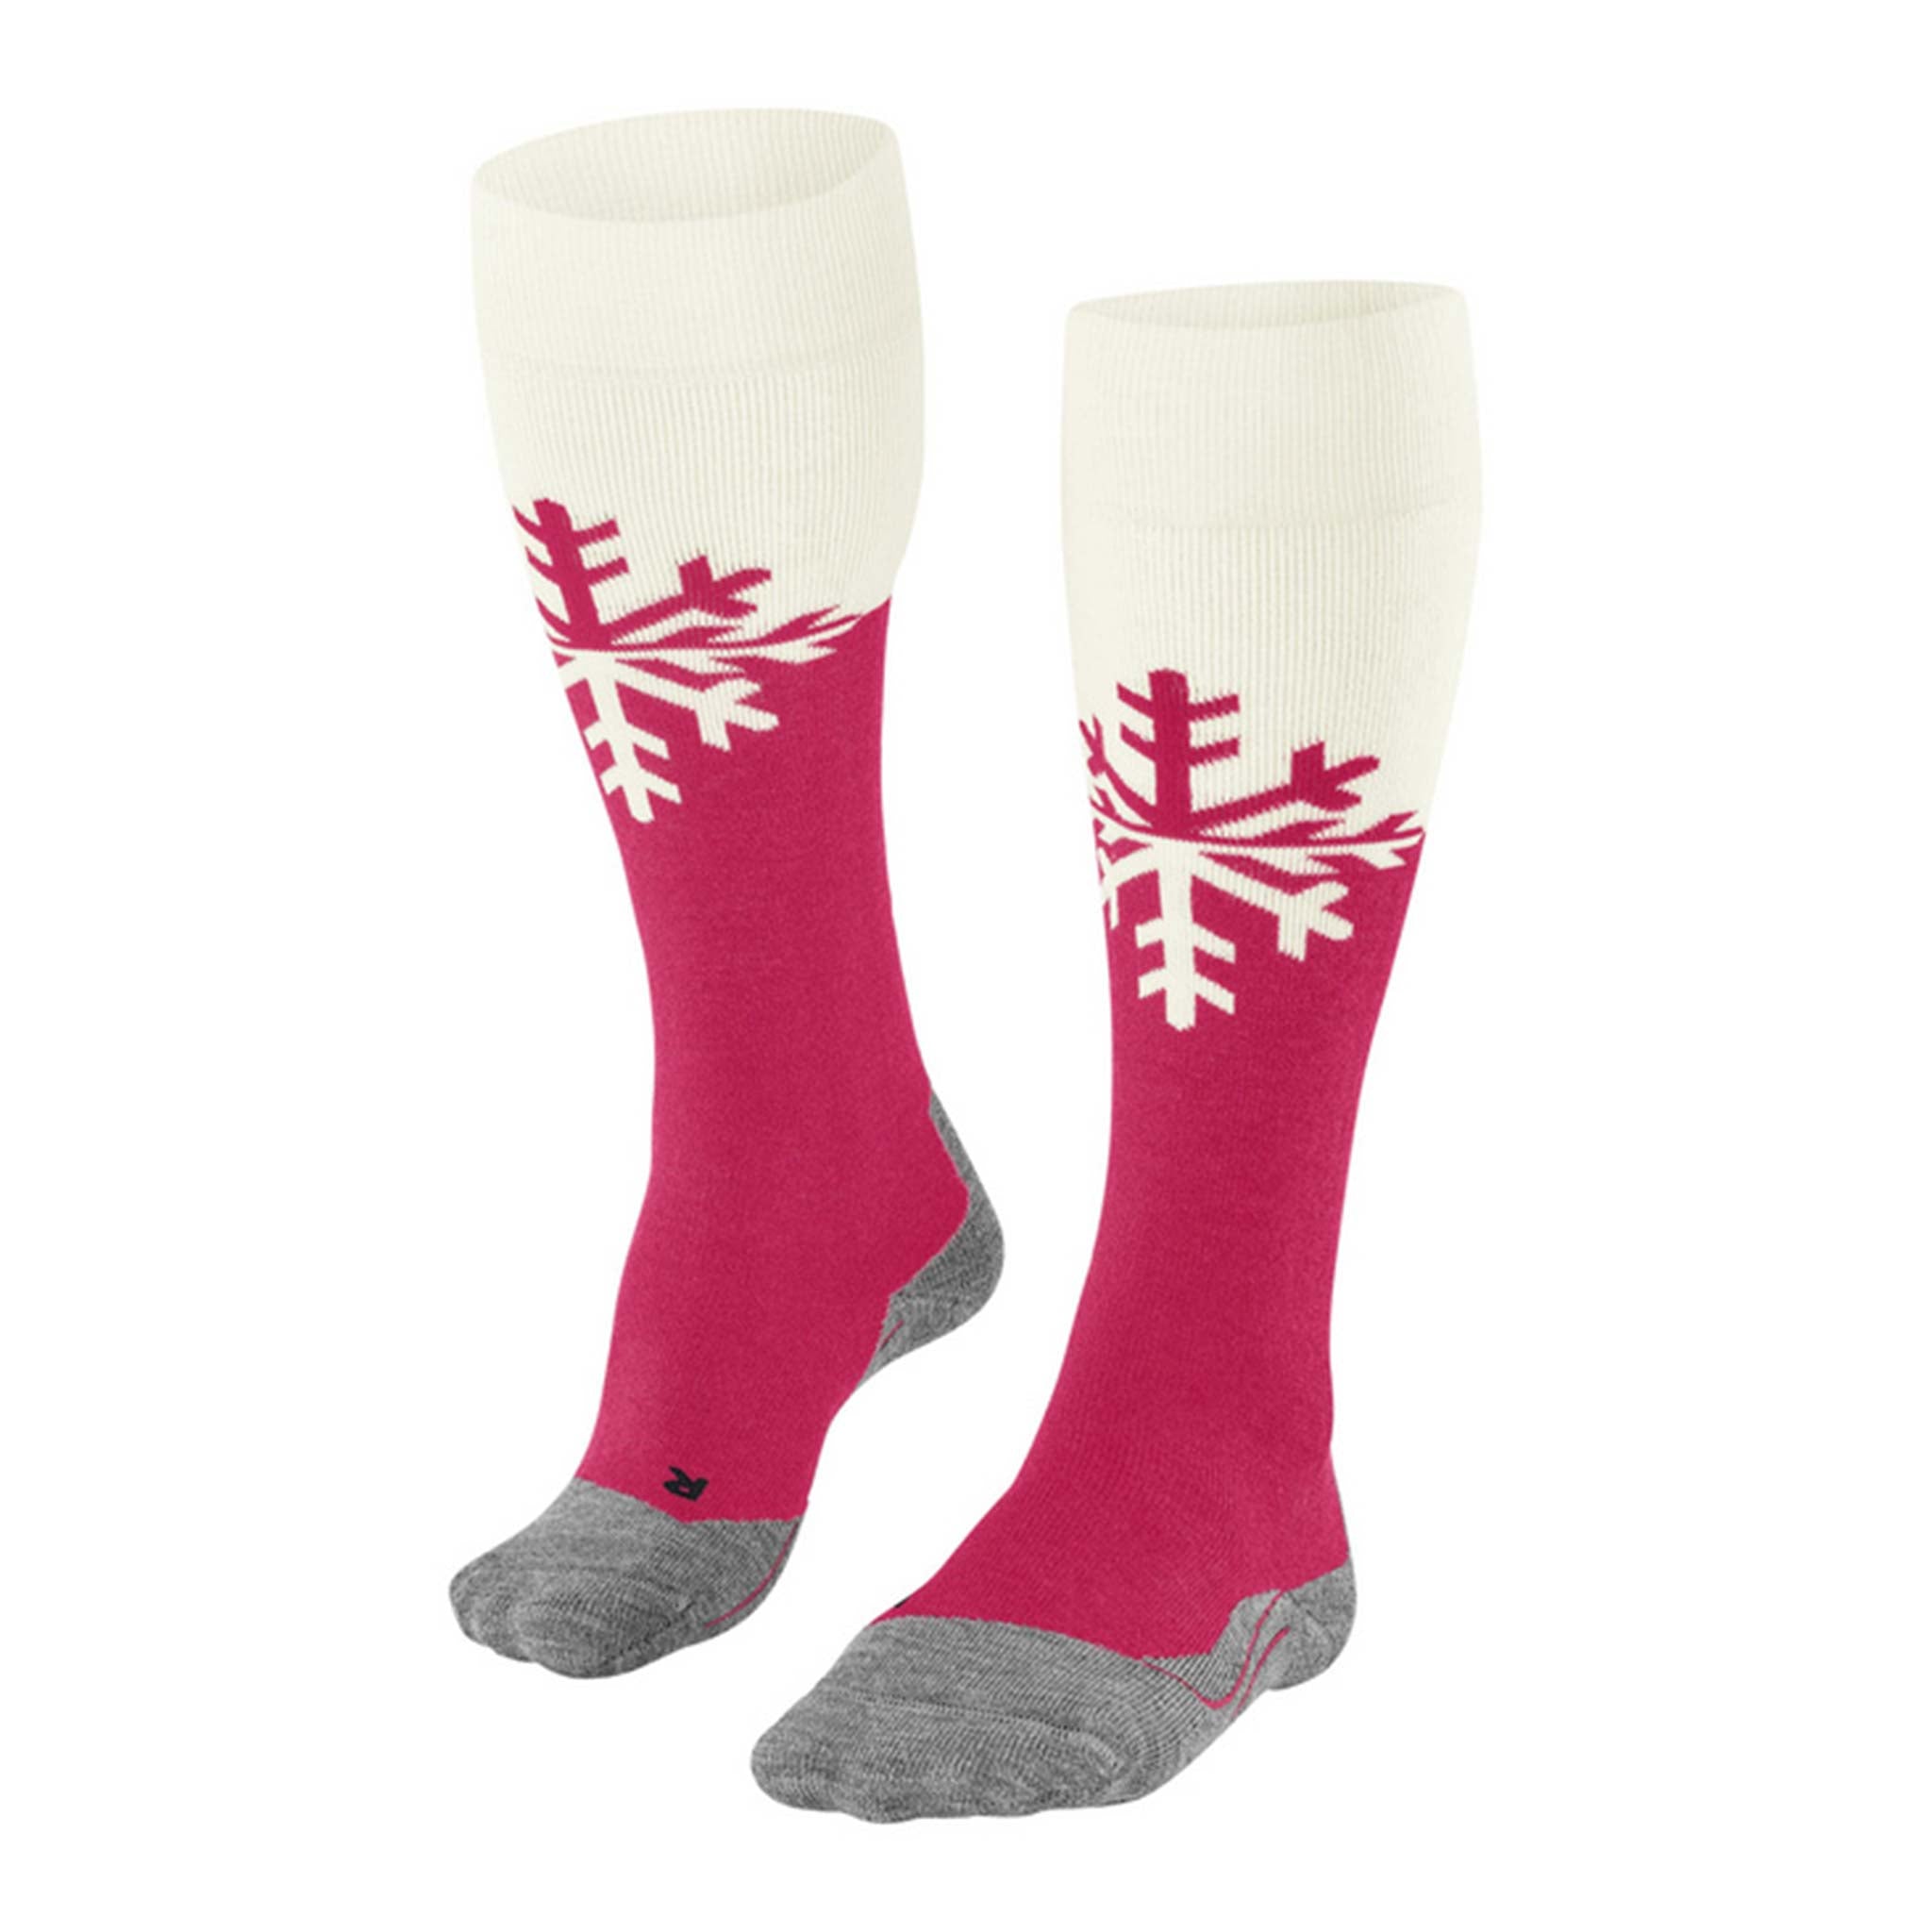 SK2 Women’s Ski Socks in Snowflake Rose